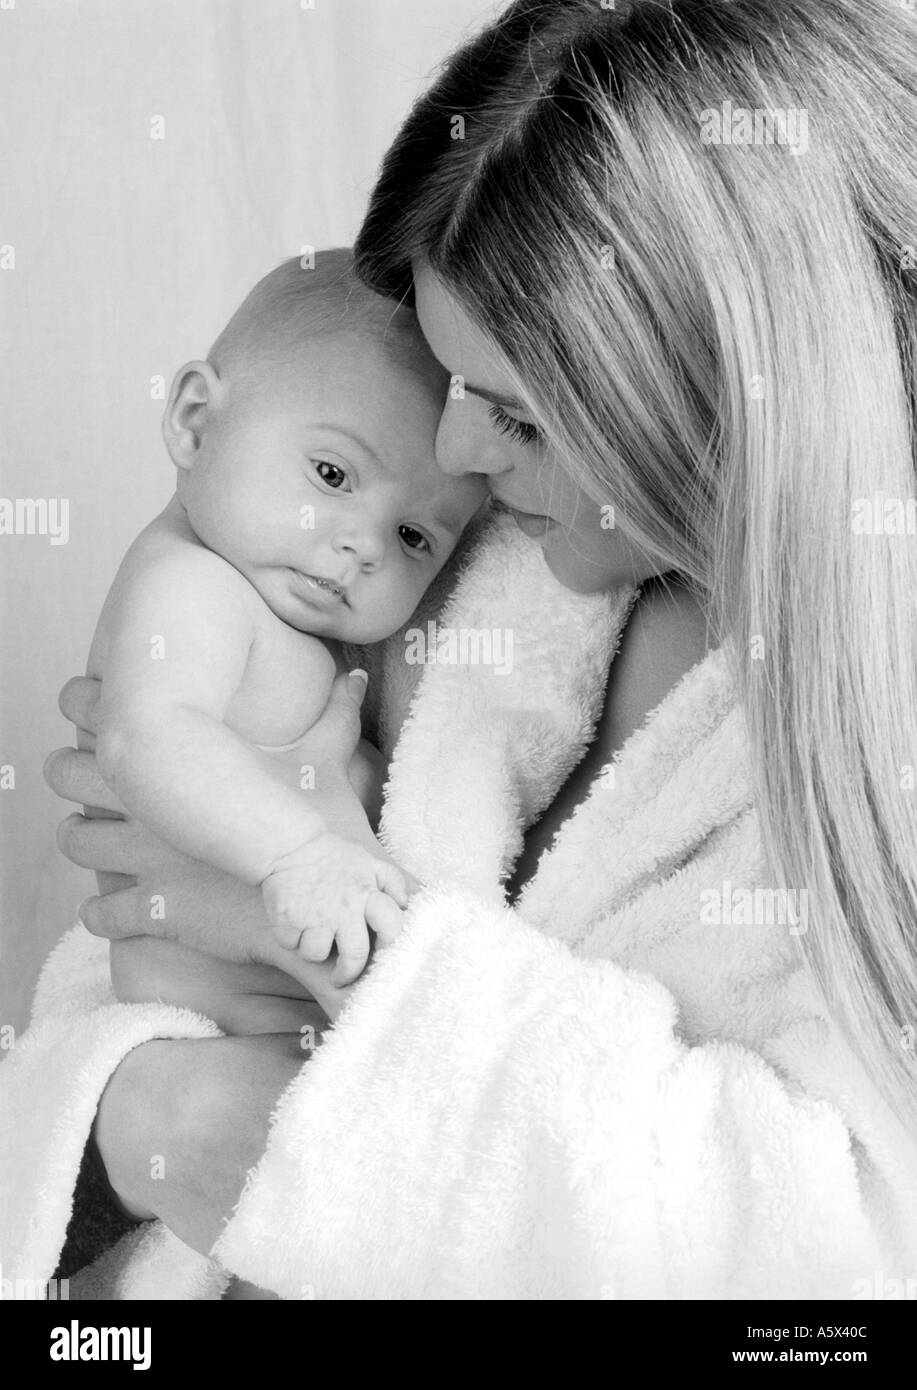 Monocromo retrato de una madre y su bebé Foto de stock